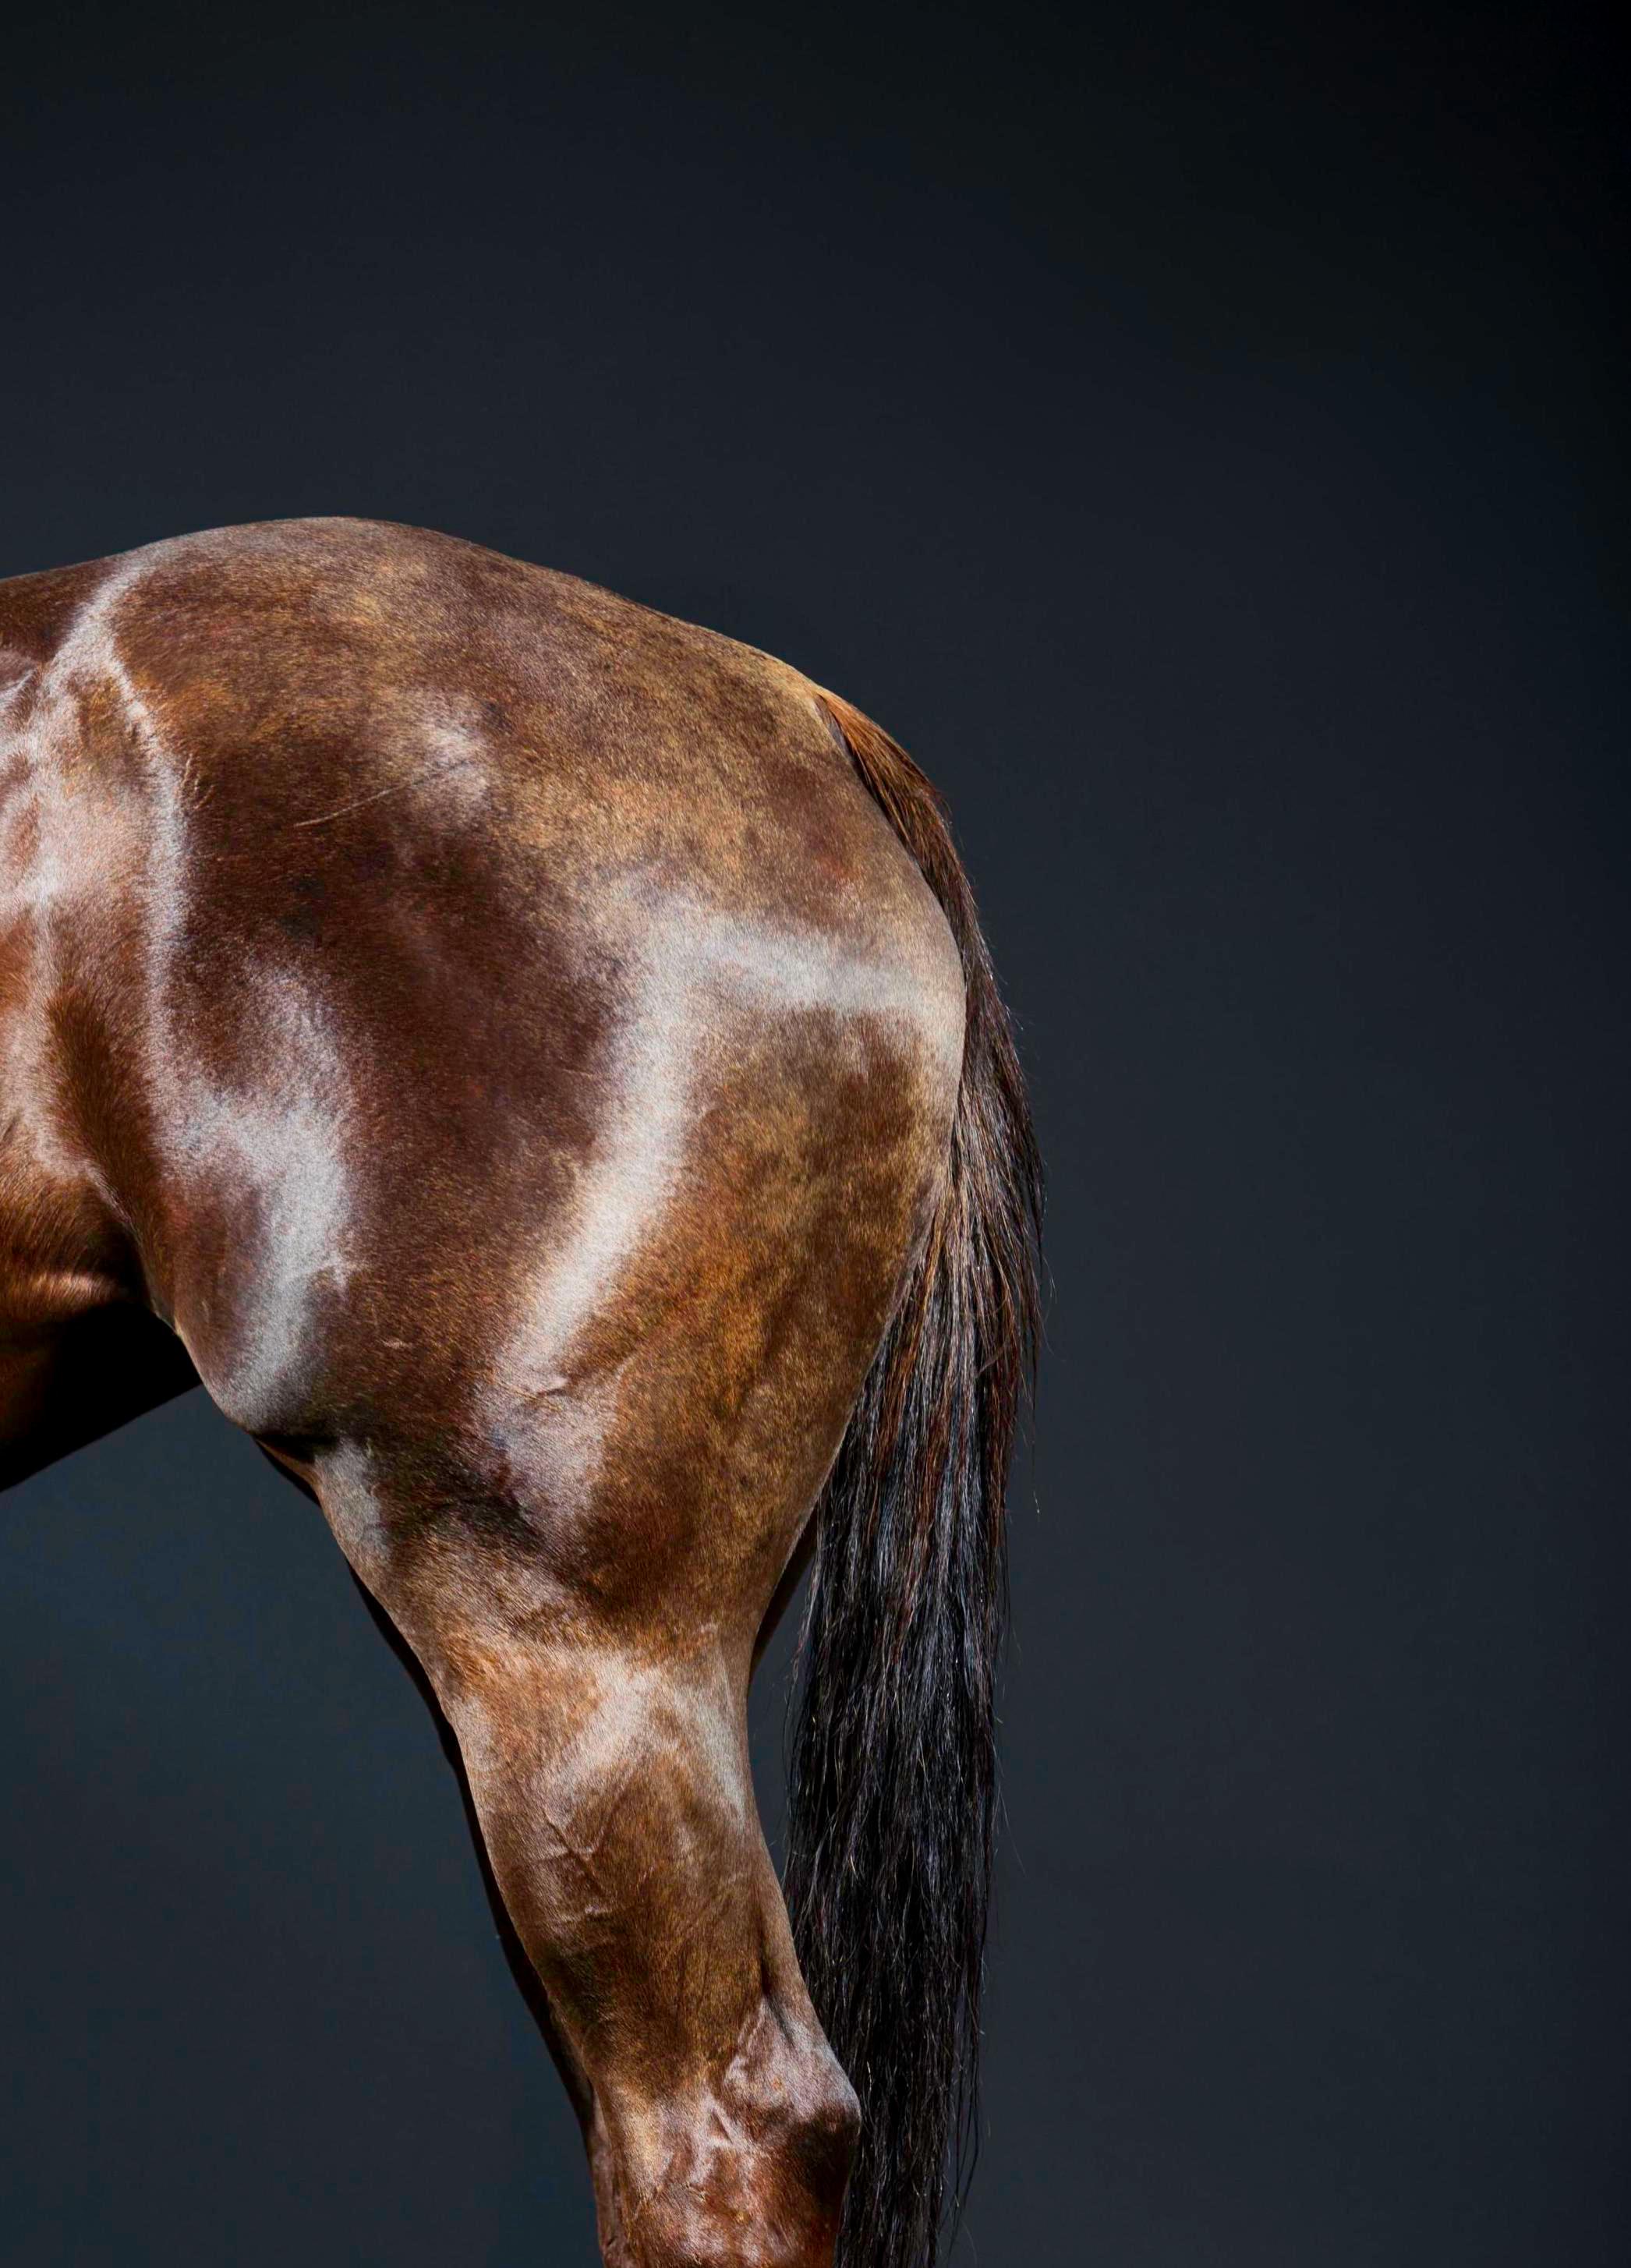 Rusa Legs II, 2015 von Juan Lamarca
Hochwertiges archivfestes Baumwollpapier
Bildgröße: 60 x 40 Zoll
Ausgabe 3 von 8 plus 2 AP
Ungerahmt

Die Horse Series von Juan Lamarca ist eine abstrakte Sammlung von Fotografien, die Hochleistungspferde zeigen.